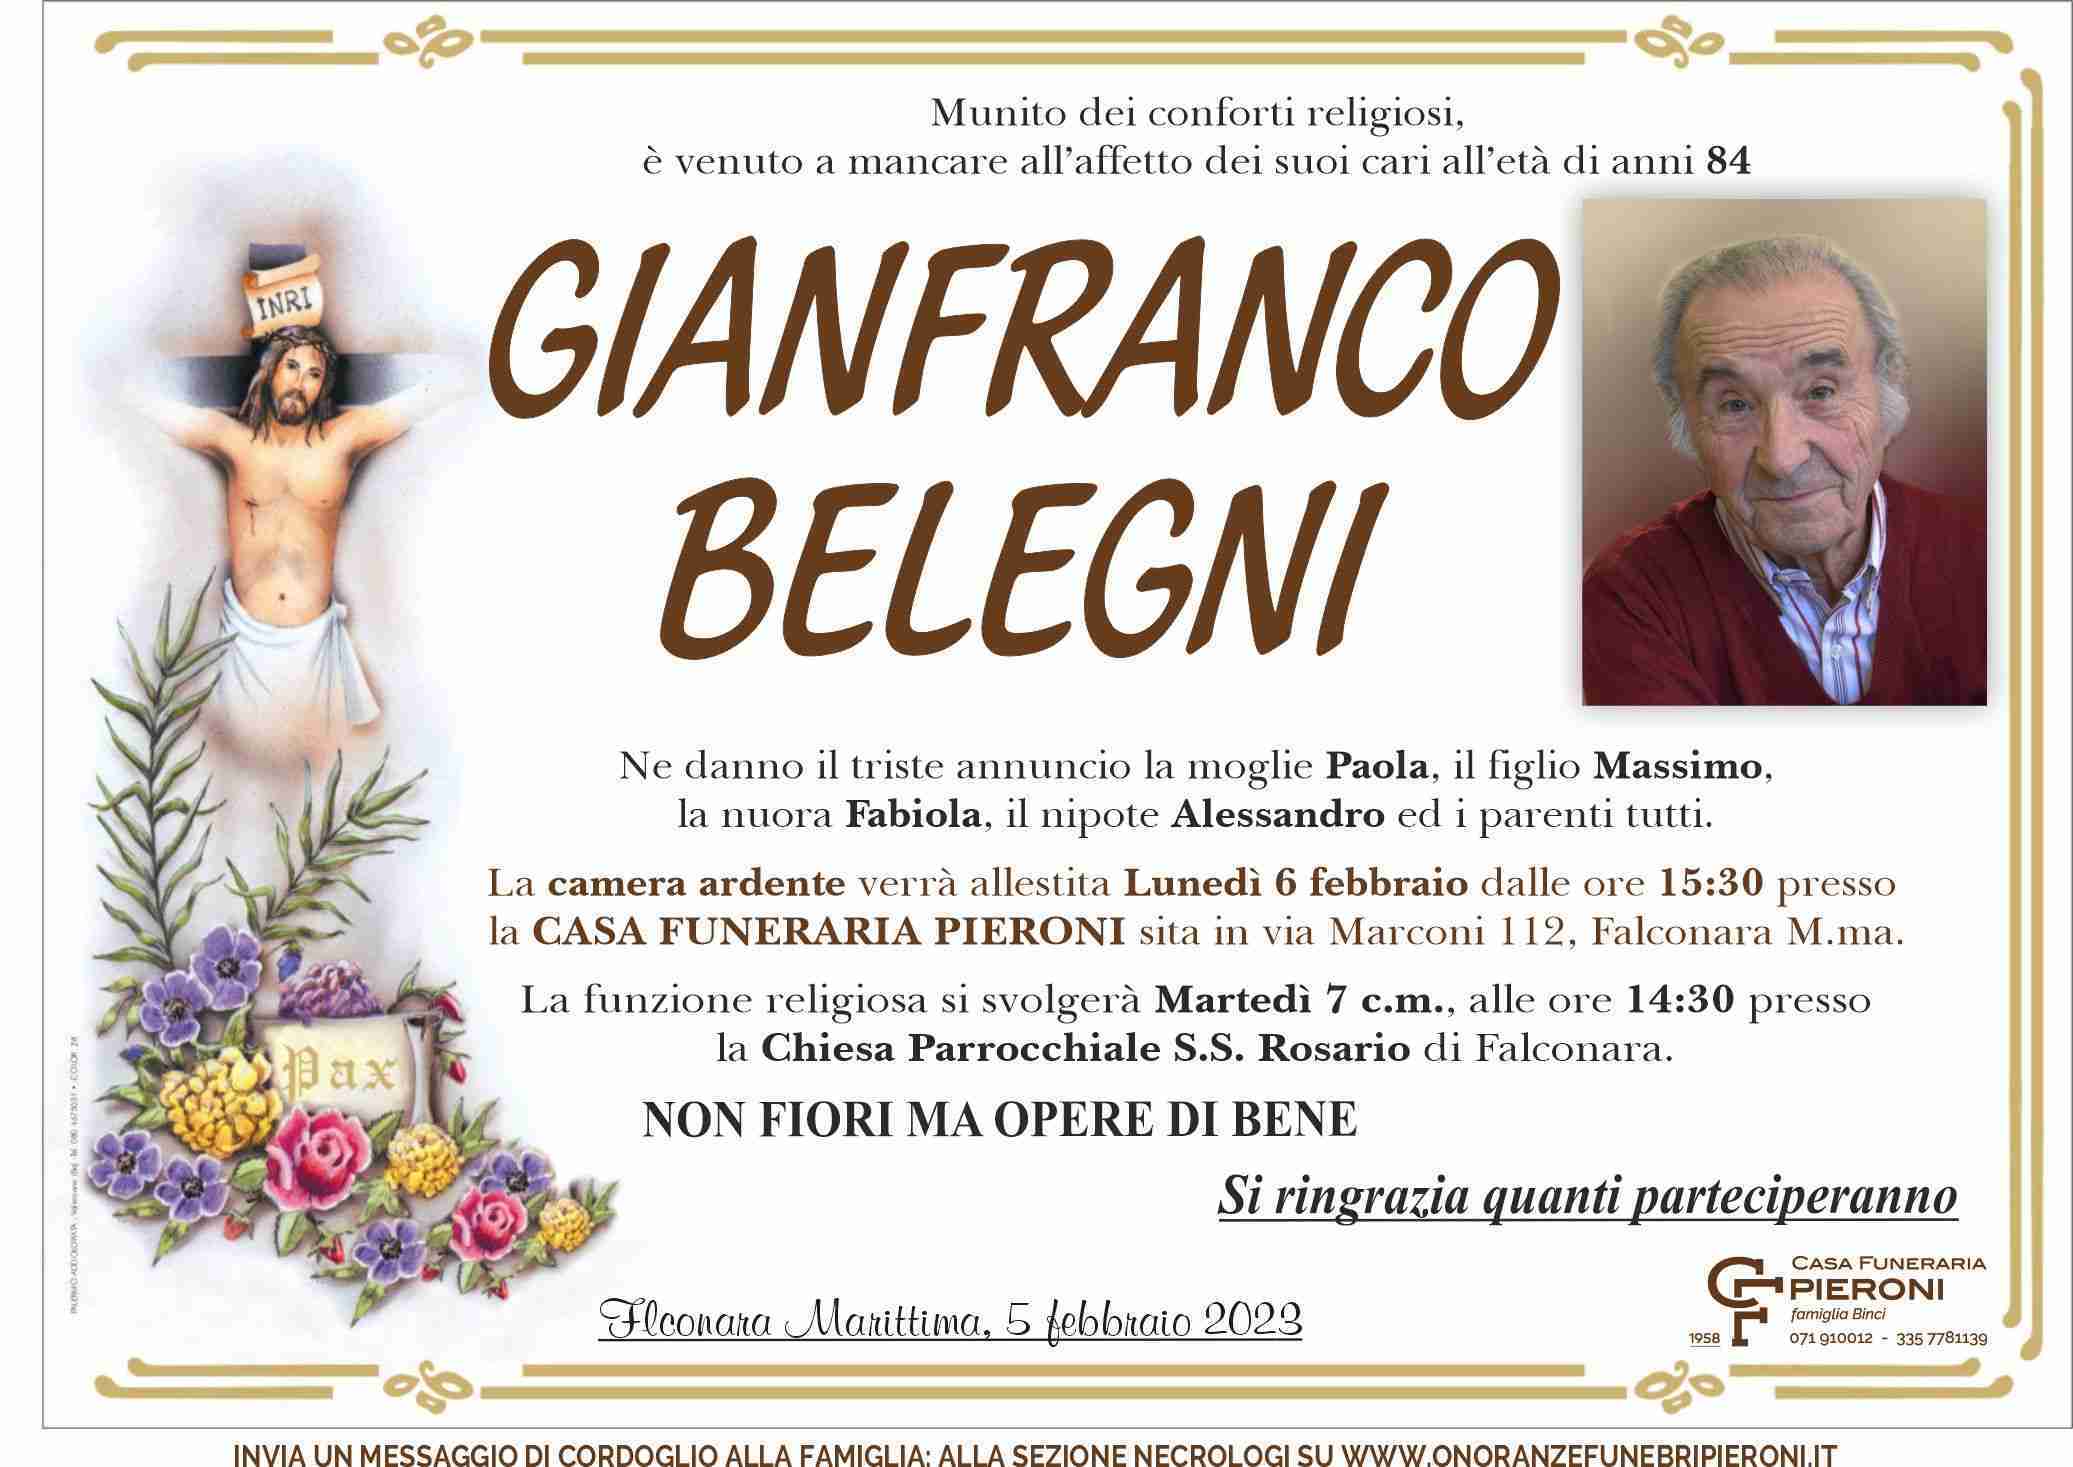 Gianfranco Belegni